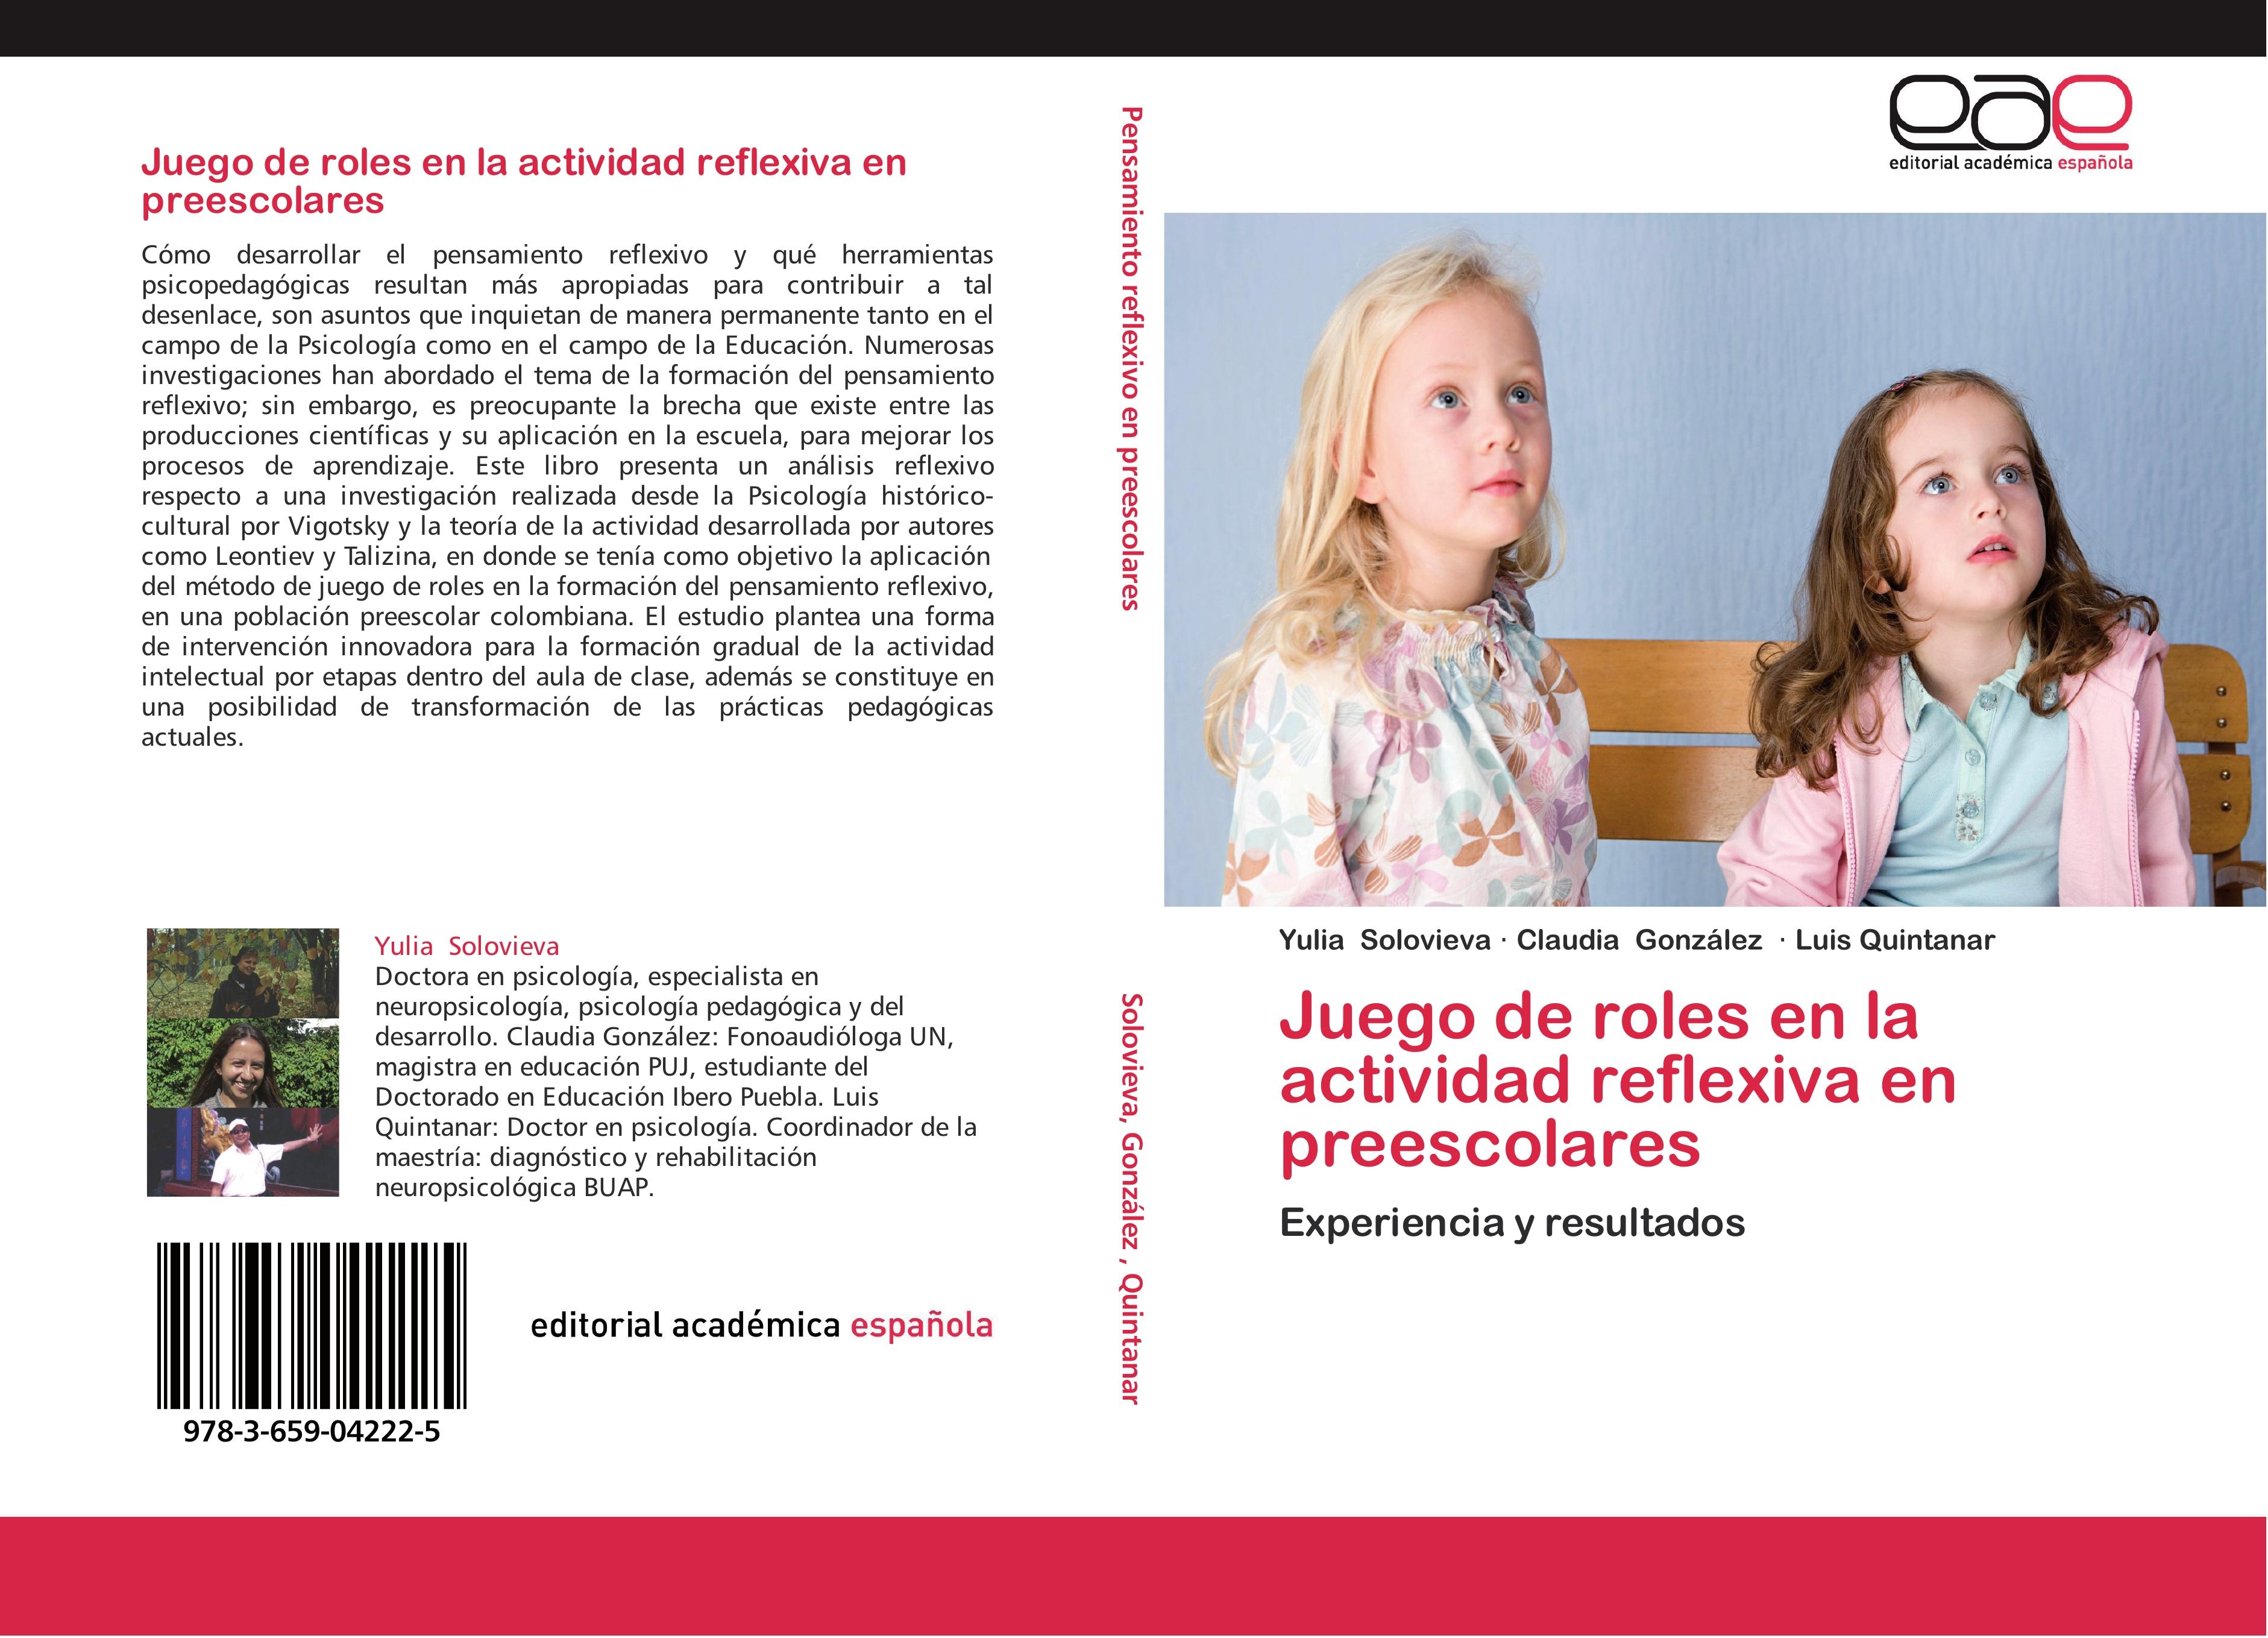 Juego de roles en la actividad reflexiva en preescolares - Yulia Solovieva Claudia González Luis Quintanar